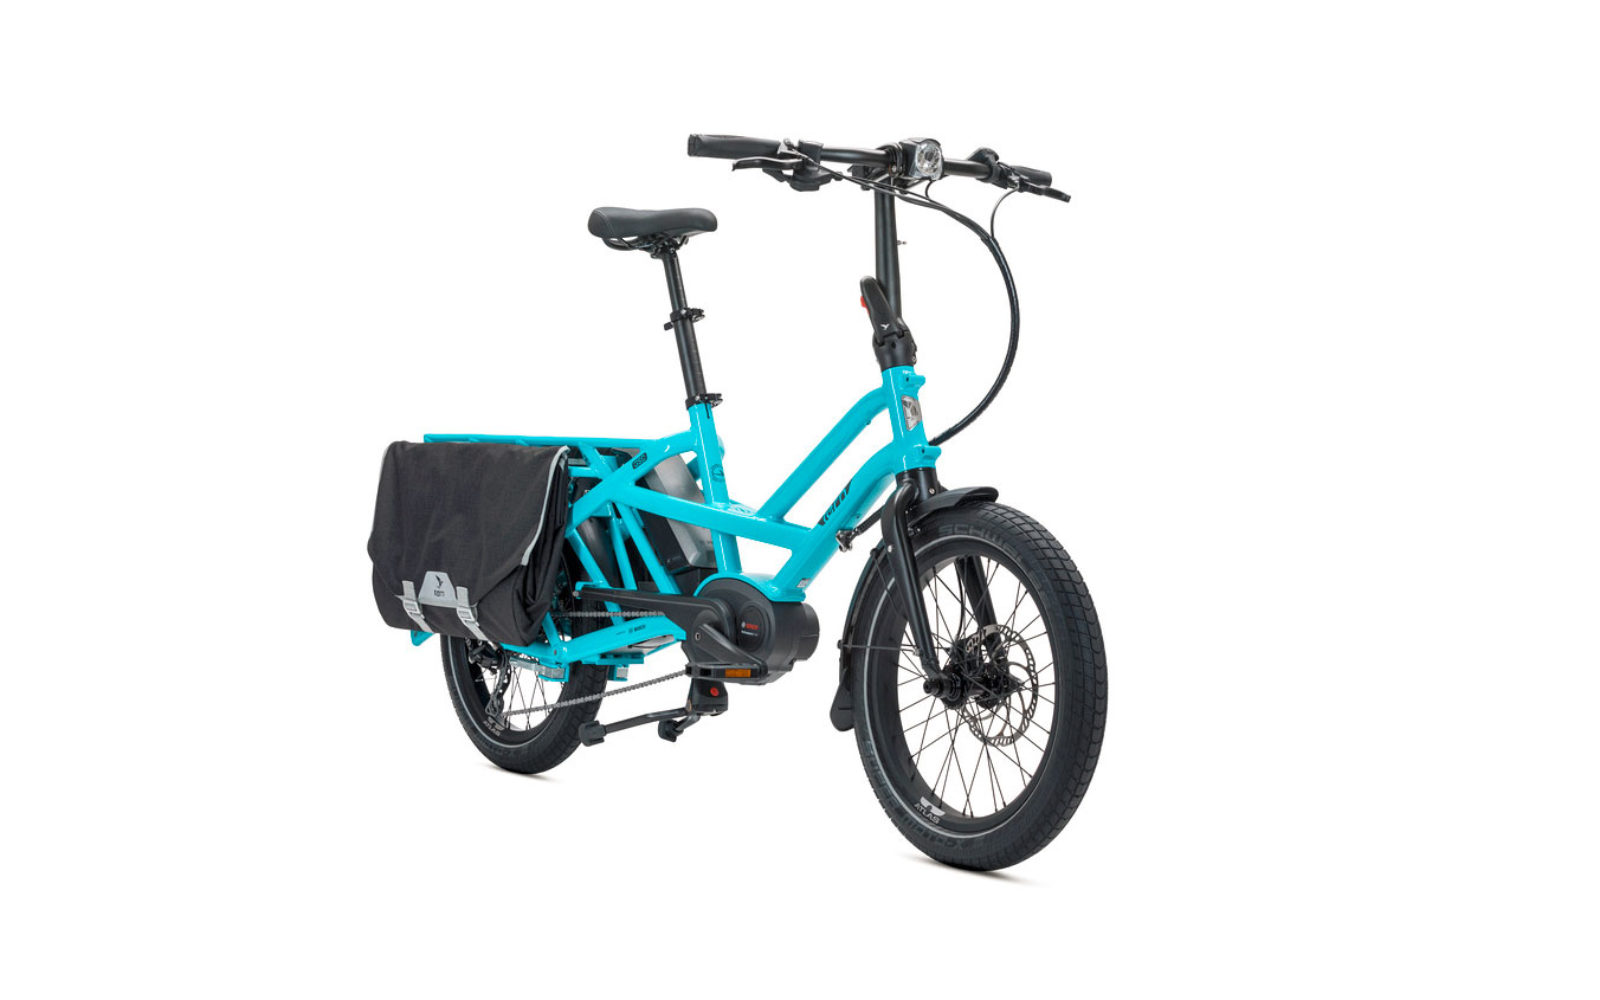 Tern GSD, una bici ‘cargo’ per il trasporto urbano e il viaggio (progettata per un adulto e 2 bambini o il bagaglio) dimensioni di una city bike, compattabile, motore Bosch a doppia batteria (autonomia 250 km), euro 4200 borse incluse